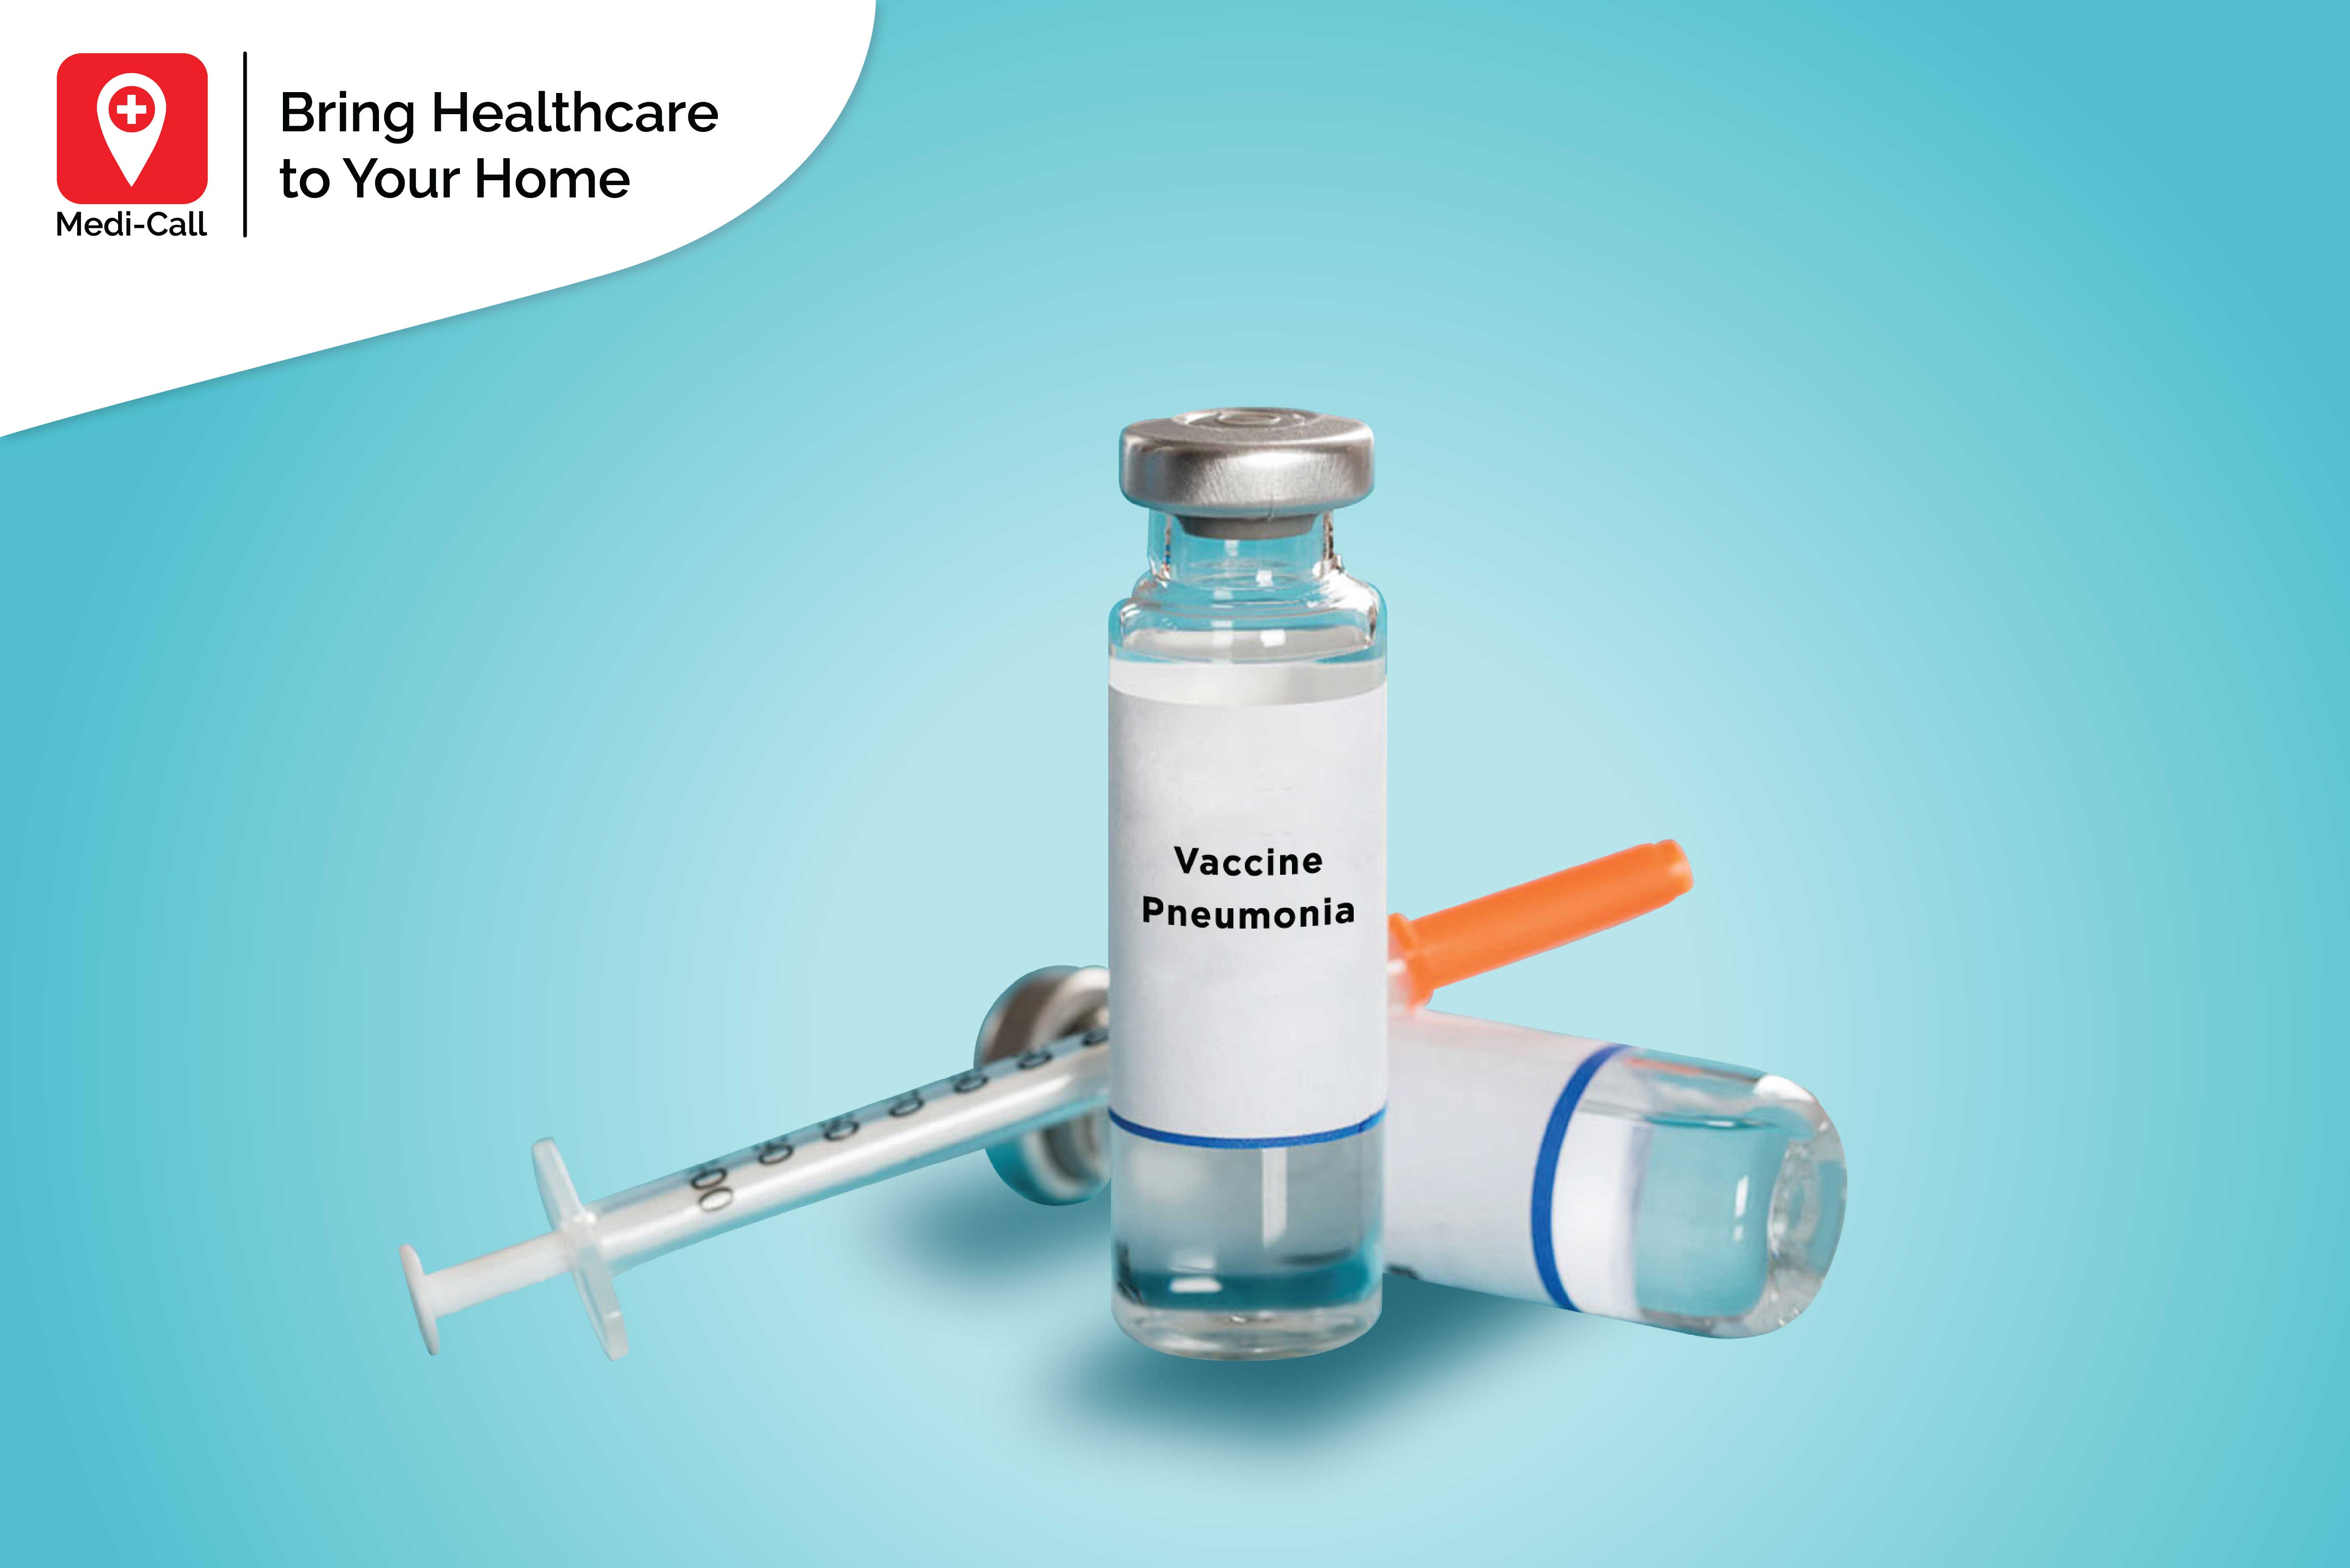 vaksin pneumonia untuk lansia, vaksin pneumonia, pneumonia, pneumonia lansia, medicall, medi-call, vaksin lansia, vaksin untuk lansia